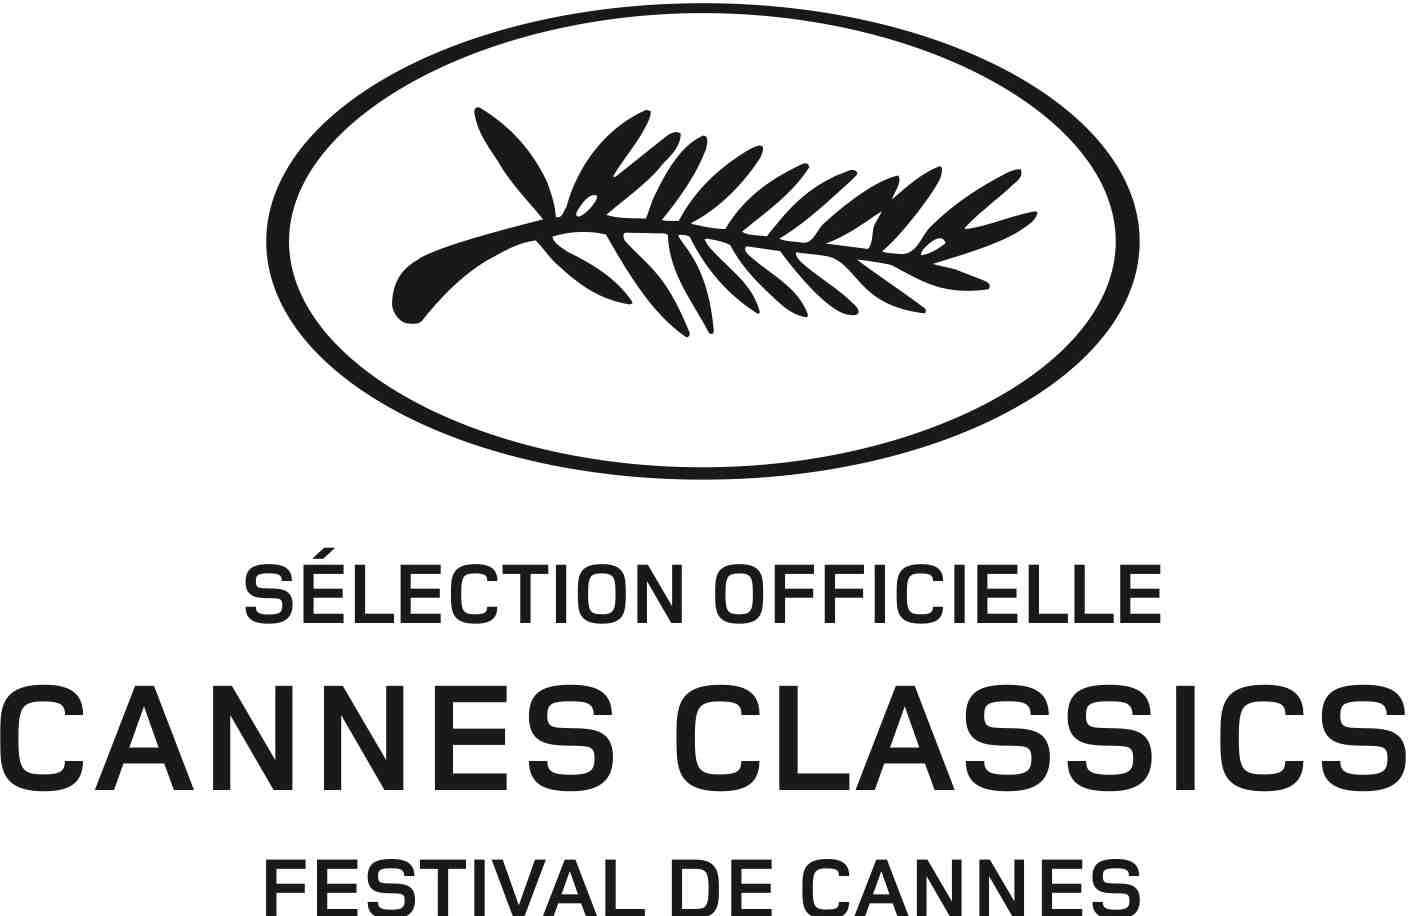 Cannes classics